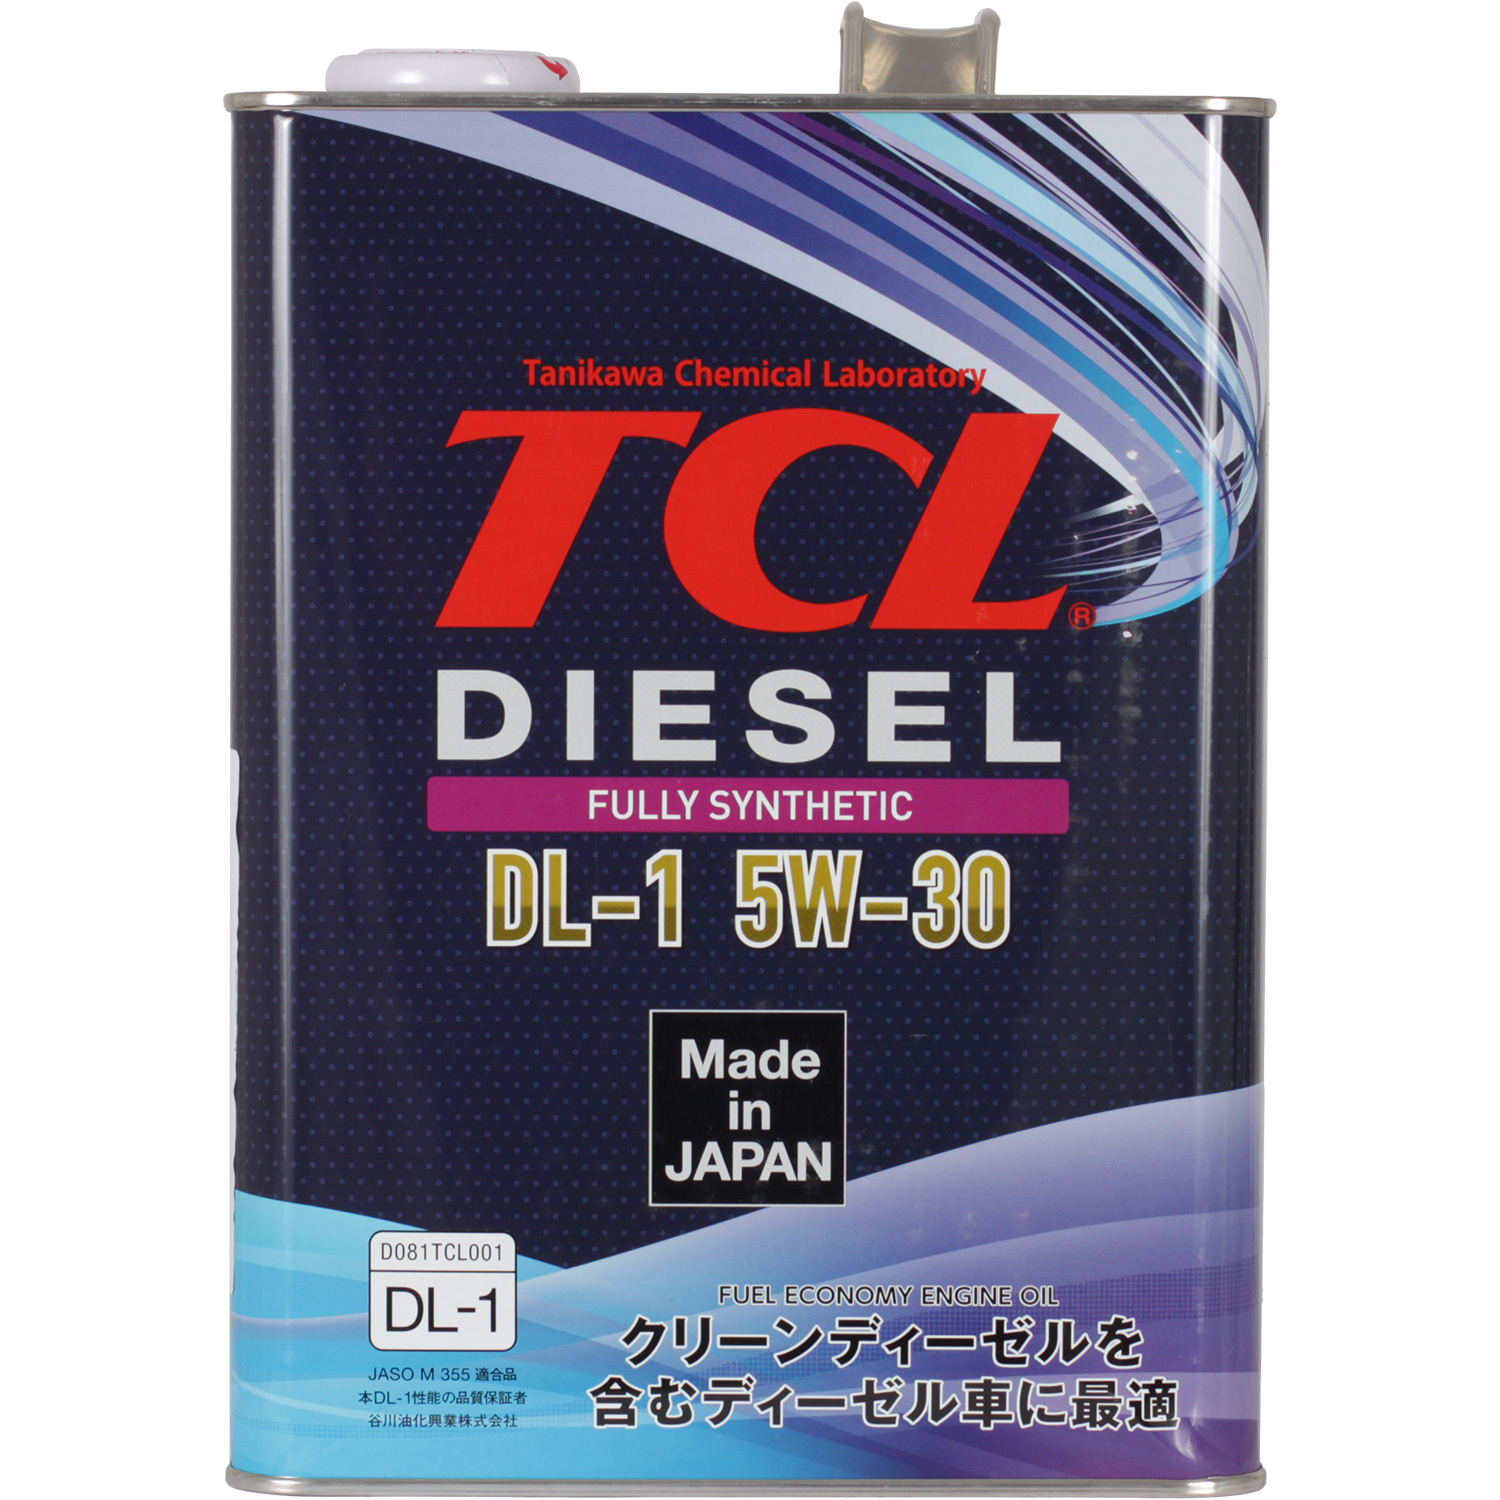 Моторное масло tcl 5w30. Масло для дизельных двигателей TCL Diesel, fully Synth, DL-1, 5w30, 1л. DL-1 5w30 Diesel. TCL масло моторное 5w-30. Японское масло TCL 5w30.